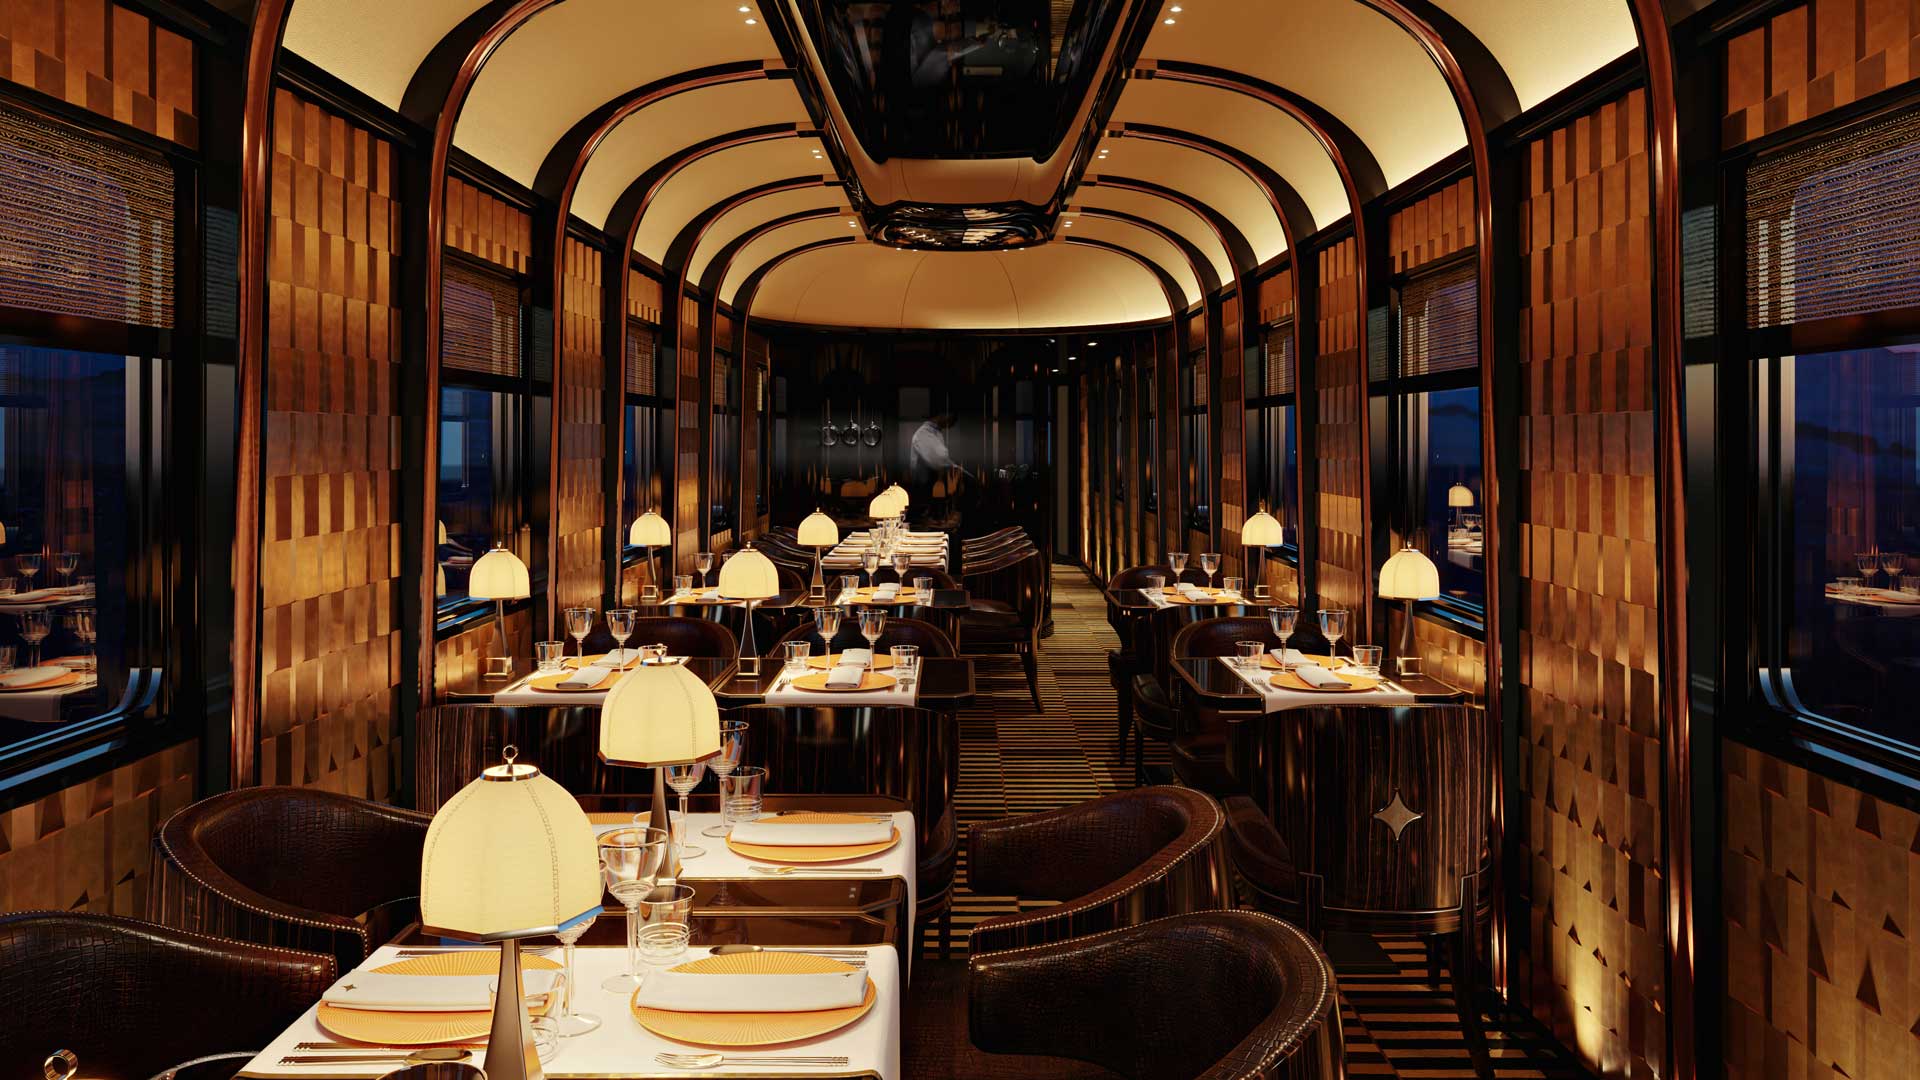 Carrozza-ristorante-Orient-Express-Robb-Report-Italia